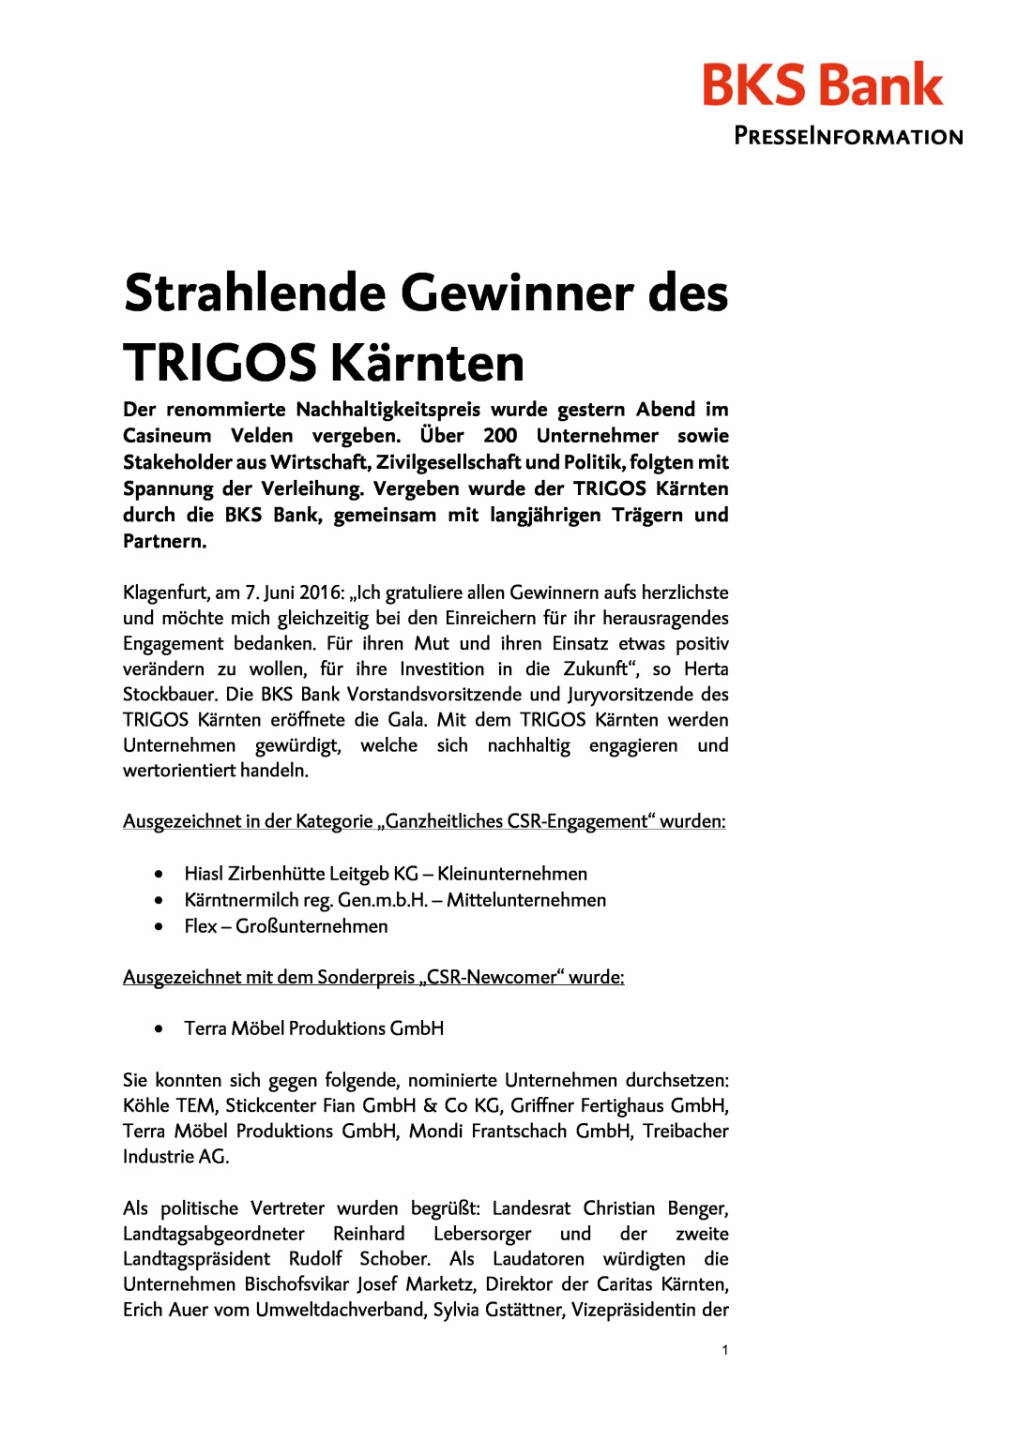 Trigos Kärnten, Seite 1/4, komplettes Dokument unter http://boerse-social.com/static/uploads/file_1181_trigos_karnten.pdf